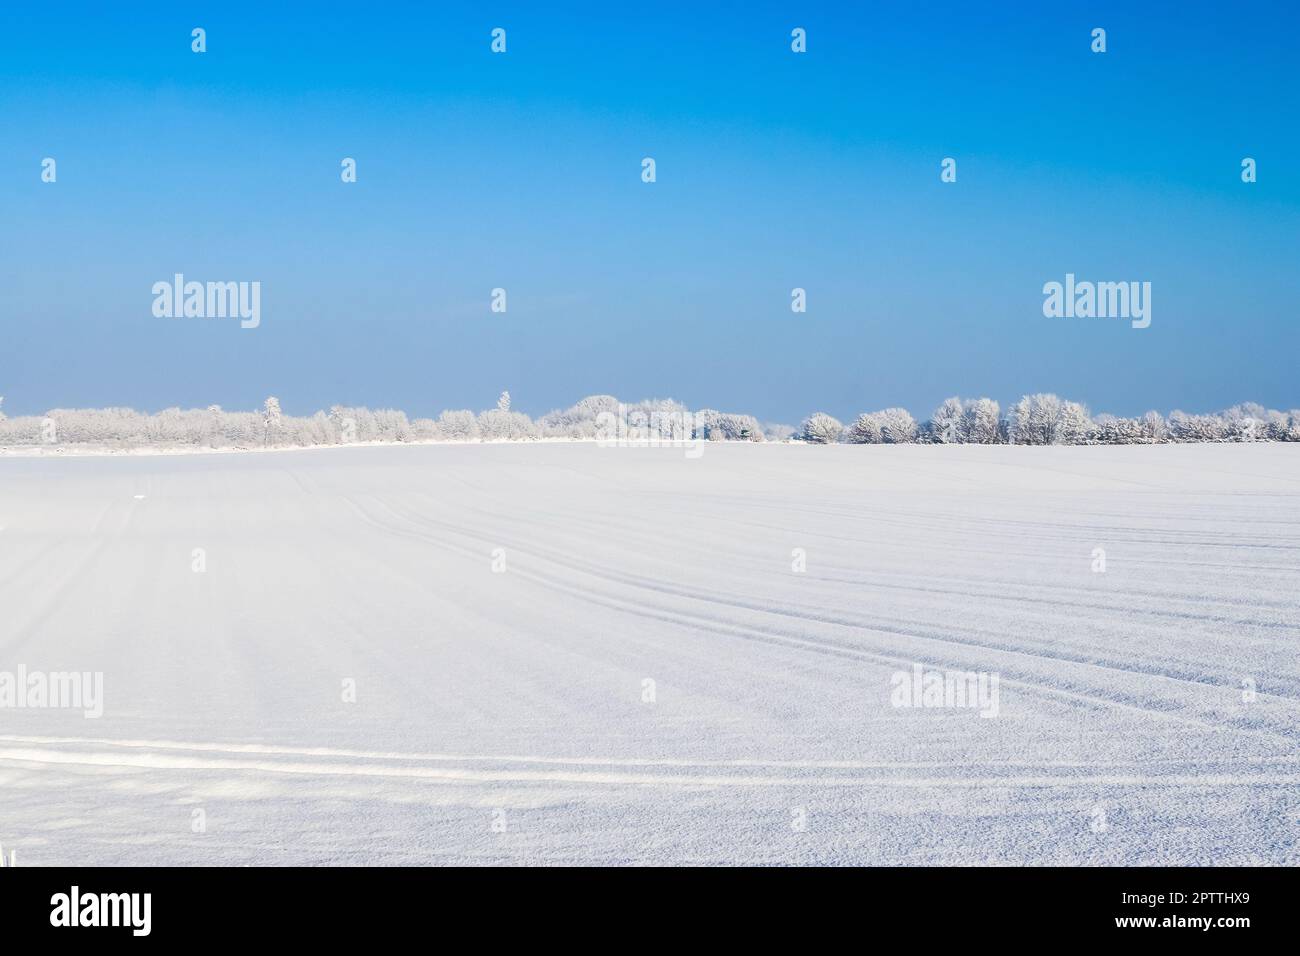 Une parcelle de terre agricole blanche recouverte de neige en hiver par une journée ensoleillée Banque D'Images